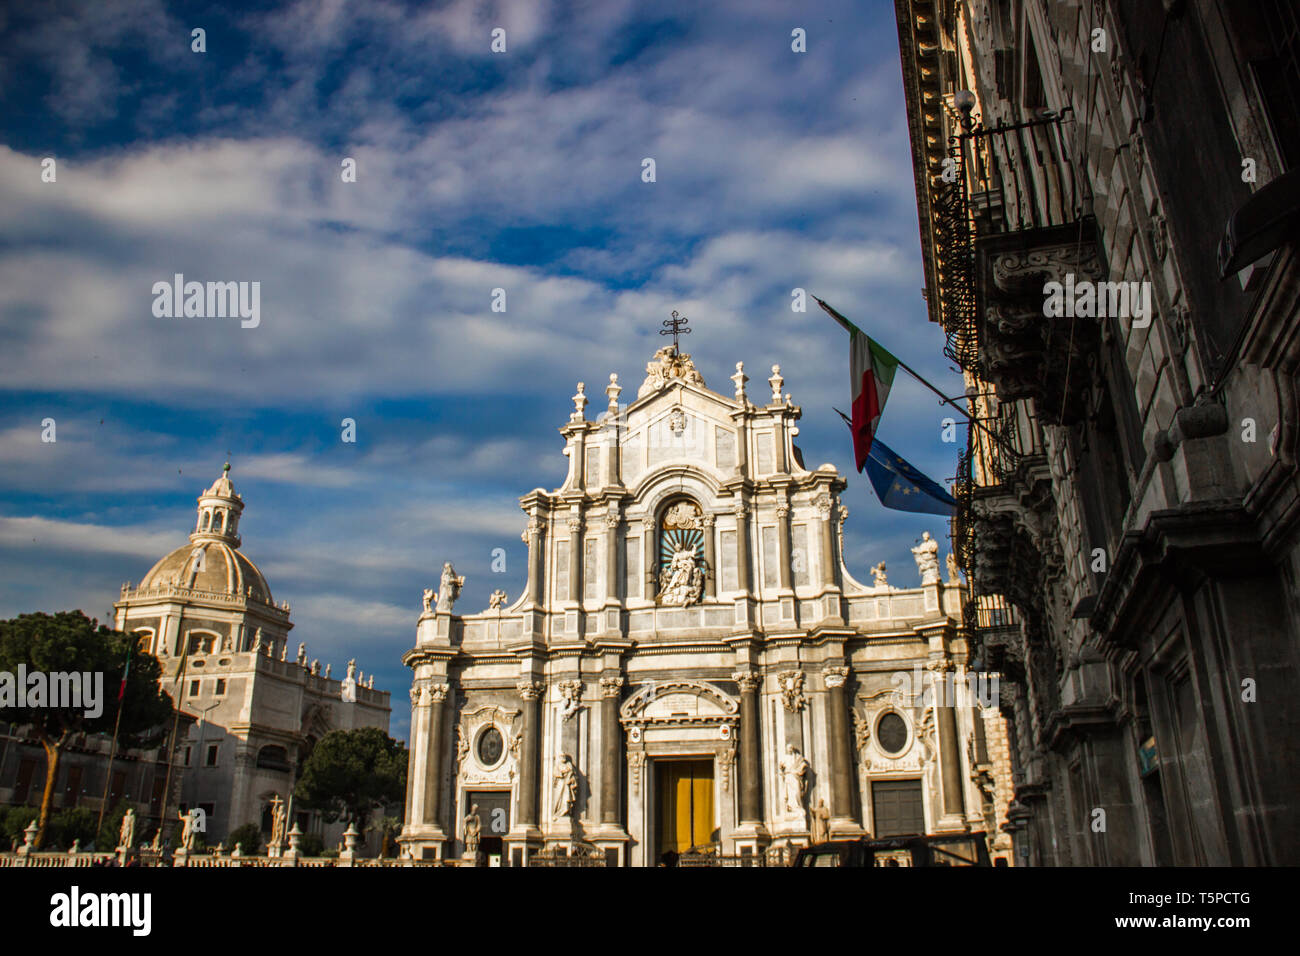 Die Kathedrale von Catania Frontansicht mit barocken Architektur Gebäude und Kuppel Stockfoto